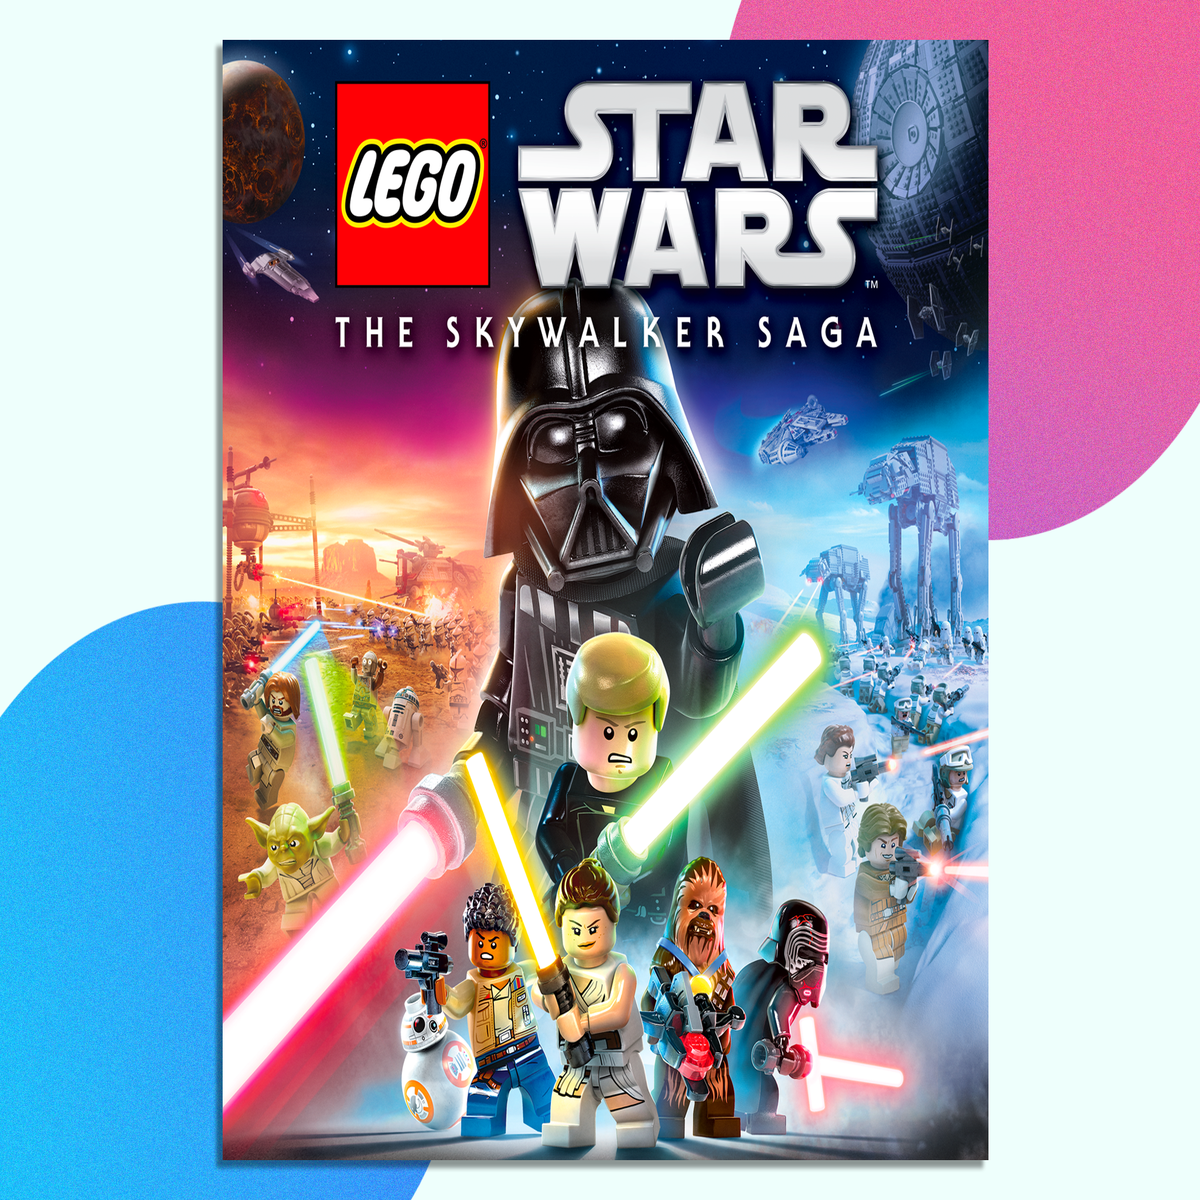 Fan mod brings LEGO Star Wars to Battlefront II